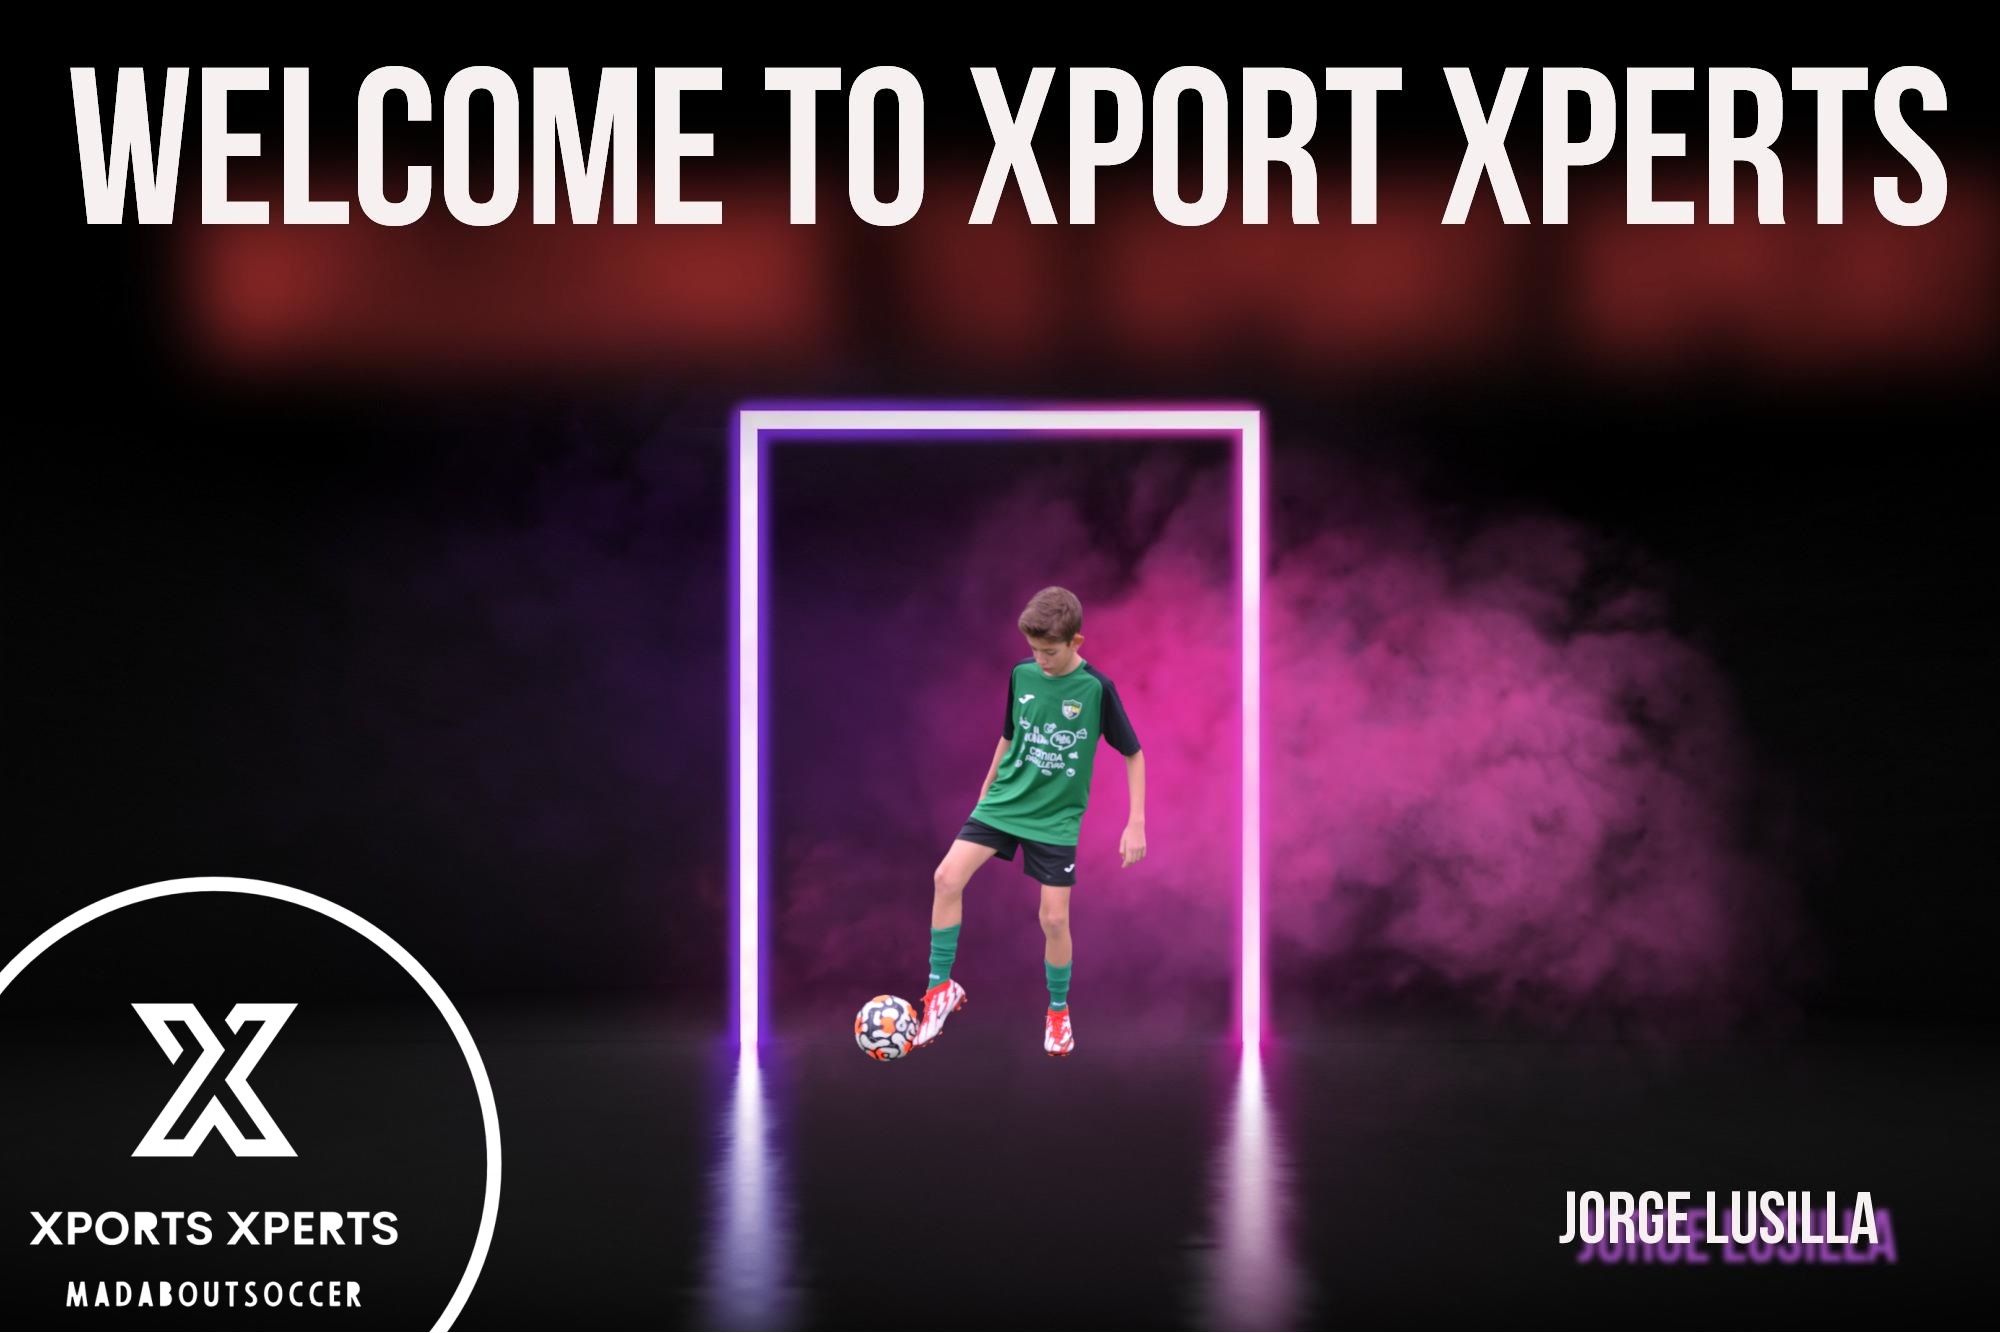 bienvenidos a XportsXperts representates de futbol 2022